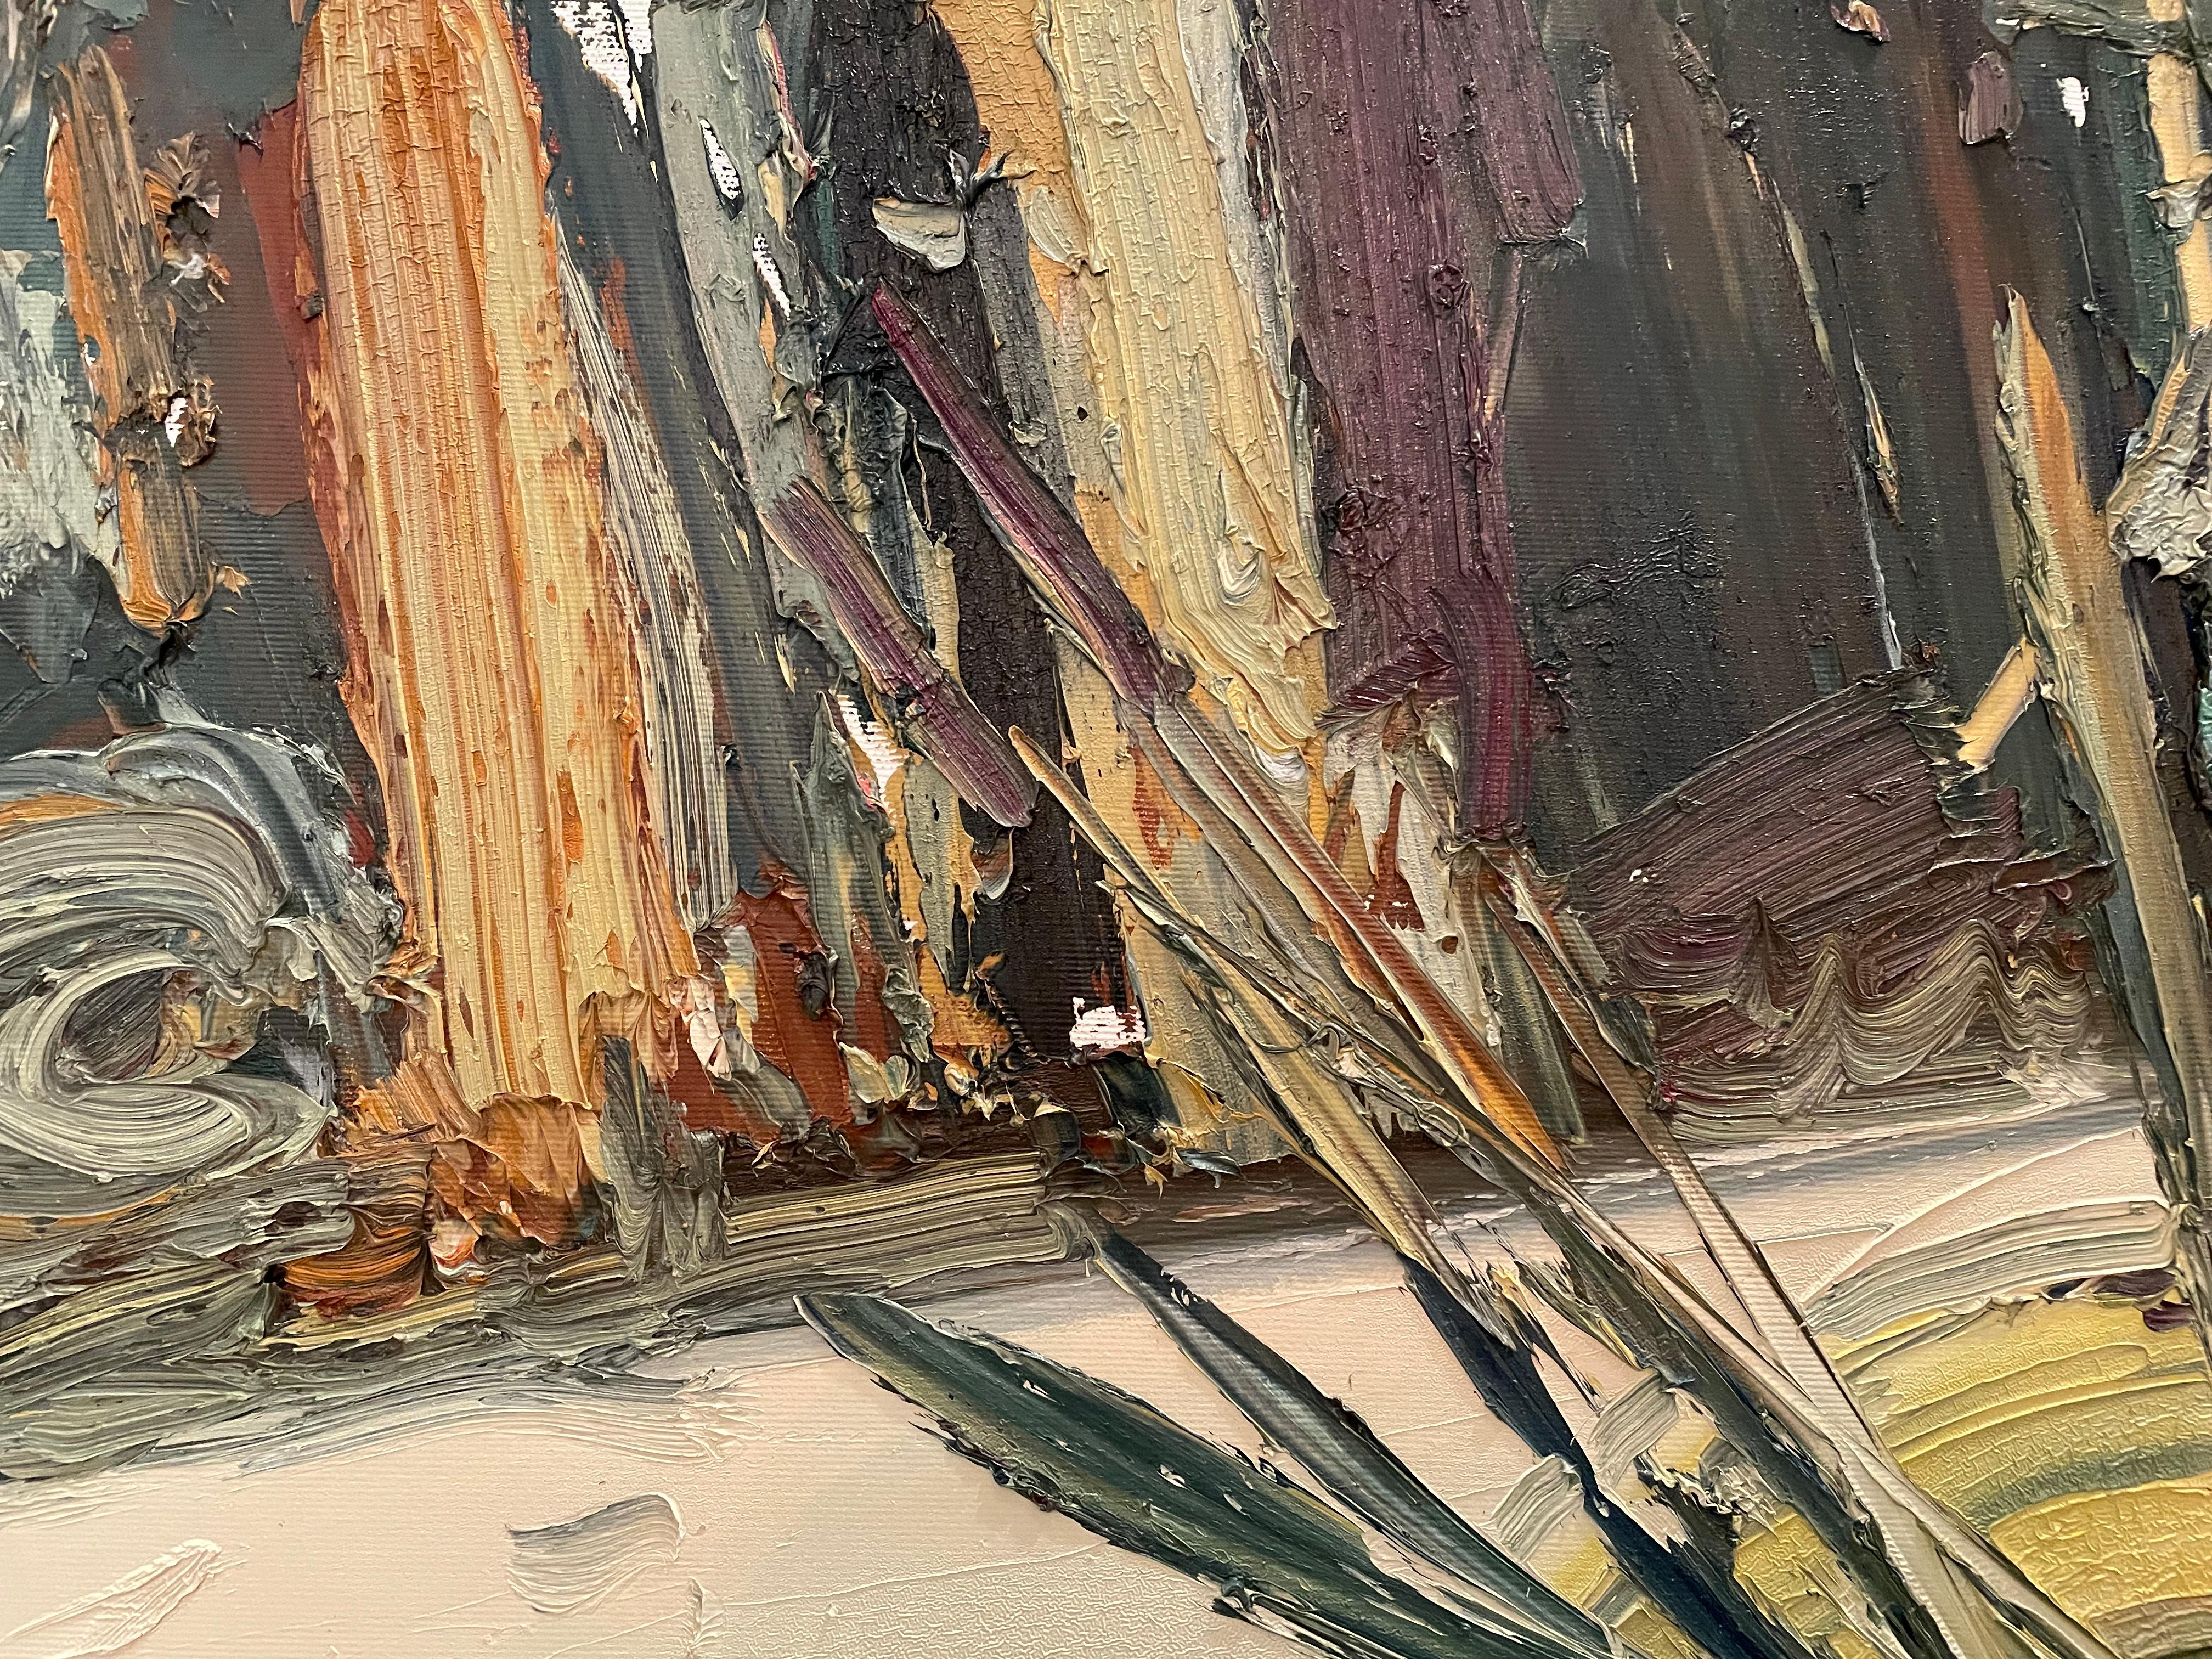 Masri, huile sur toile « Paint brushes and a palette » ( pinceaux et une palette) - Painting de Masri Hayssam